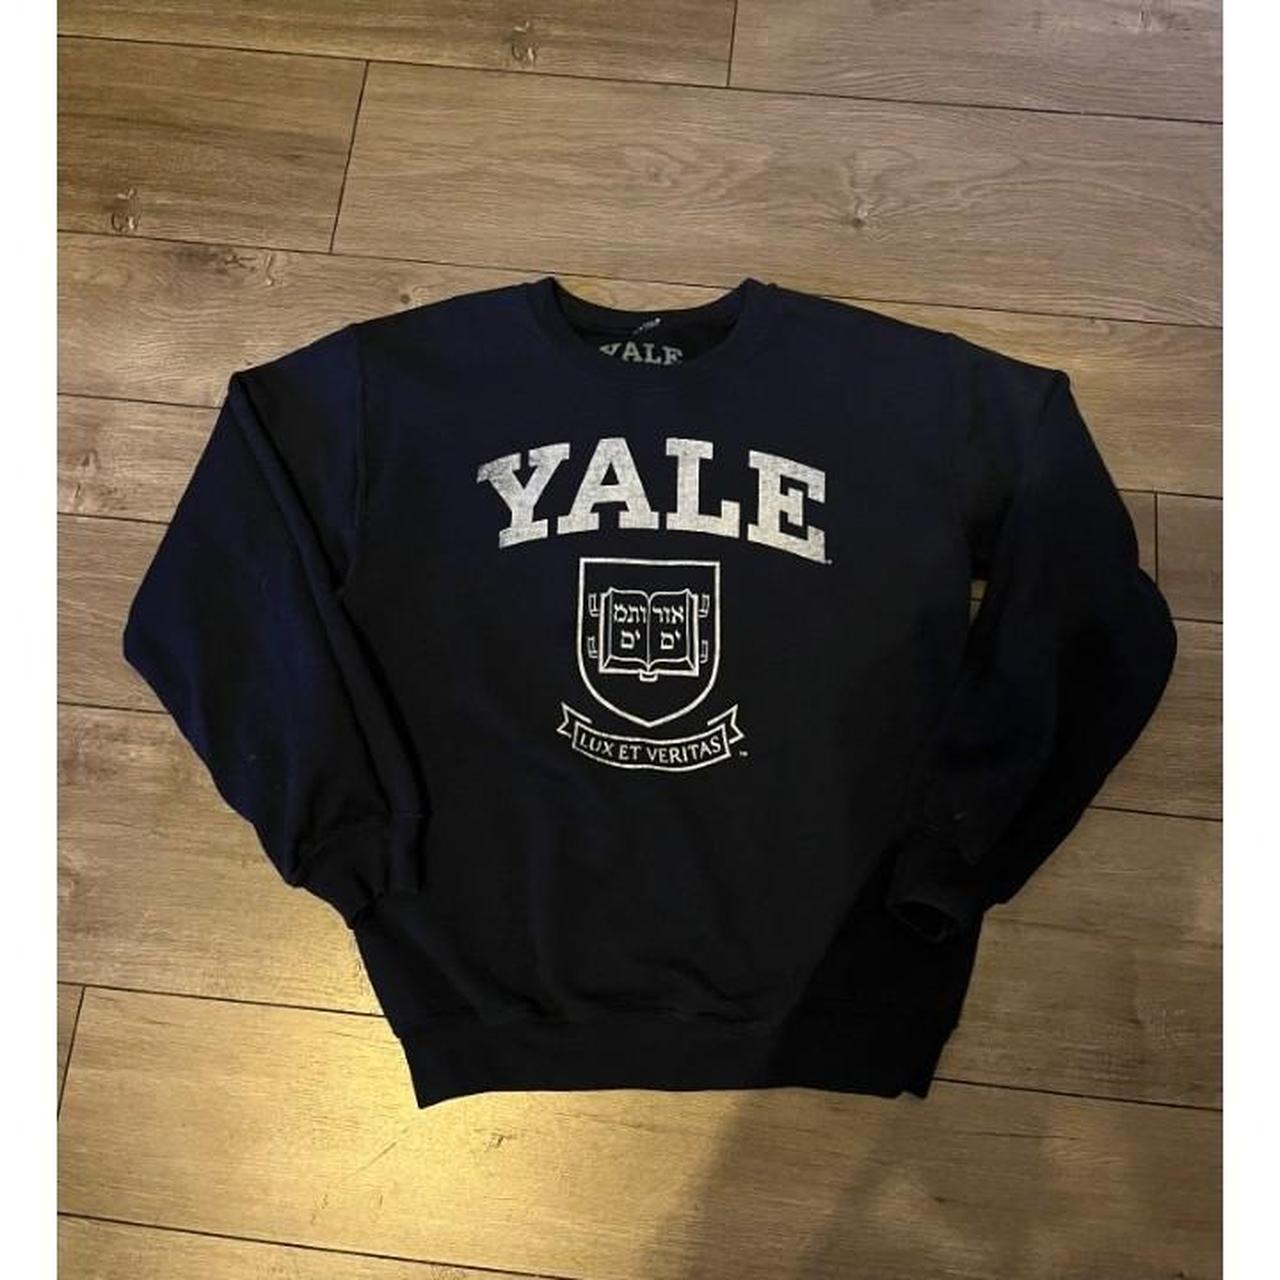 Yale crew neck great condition #Yale #Harvard #y2k... - Depop